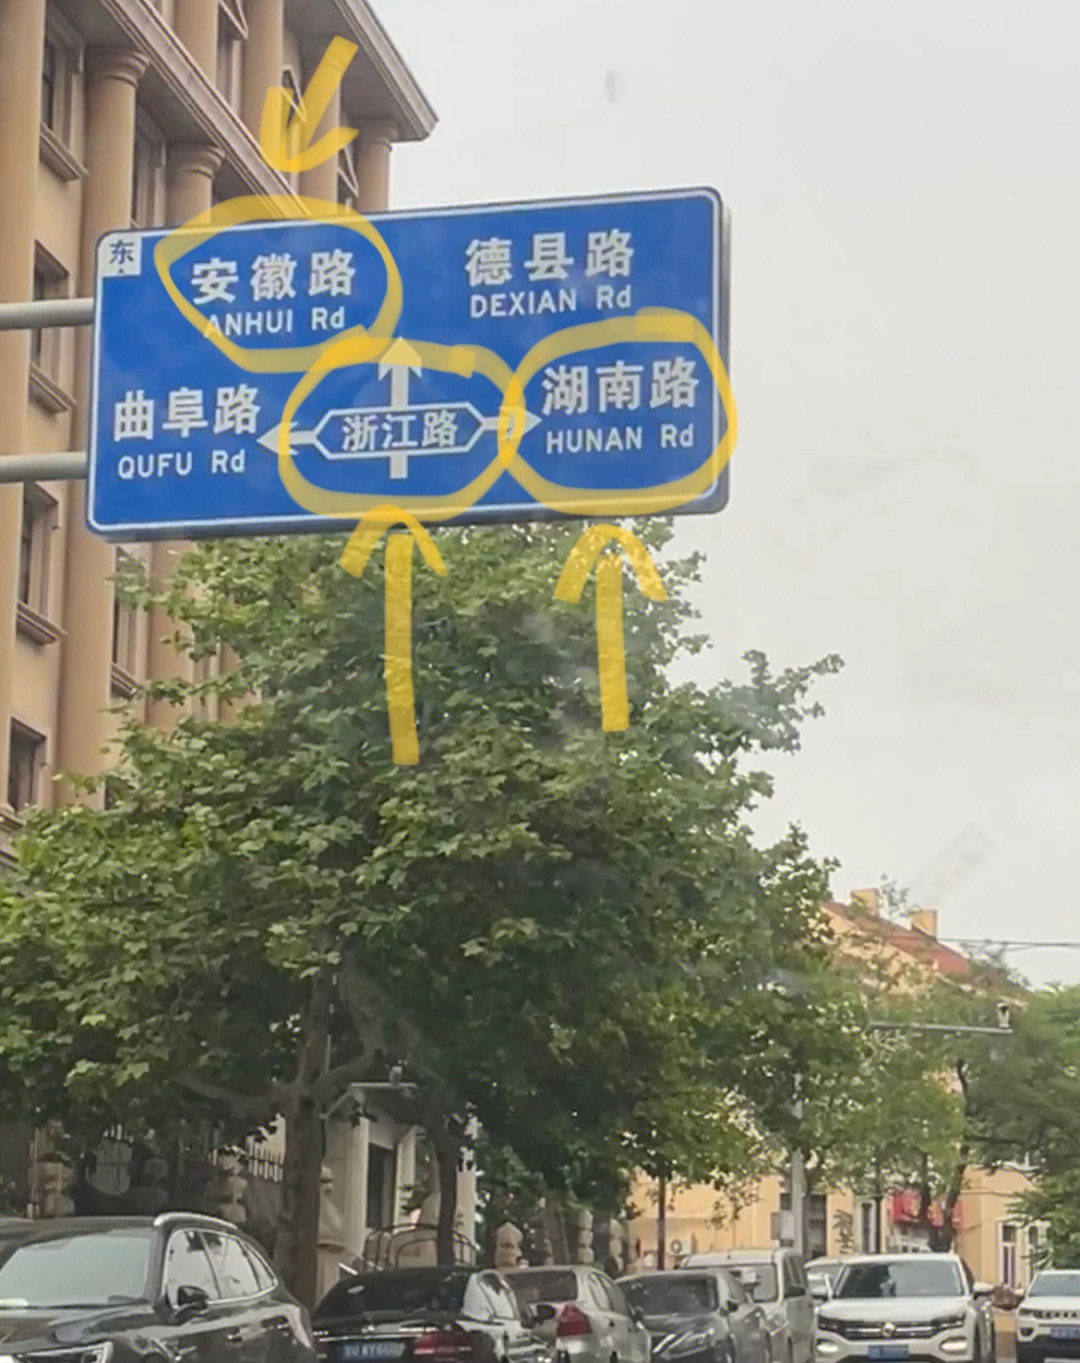 南京东路路牌照片图片